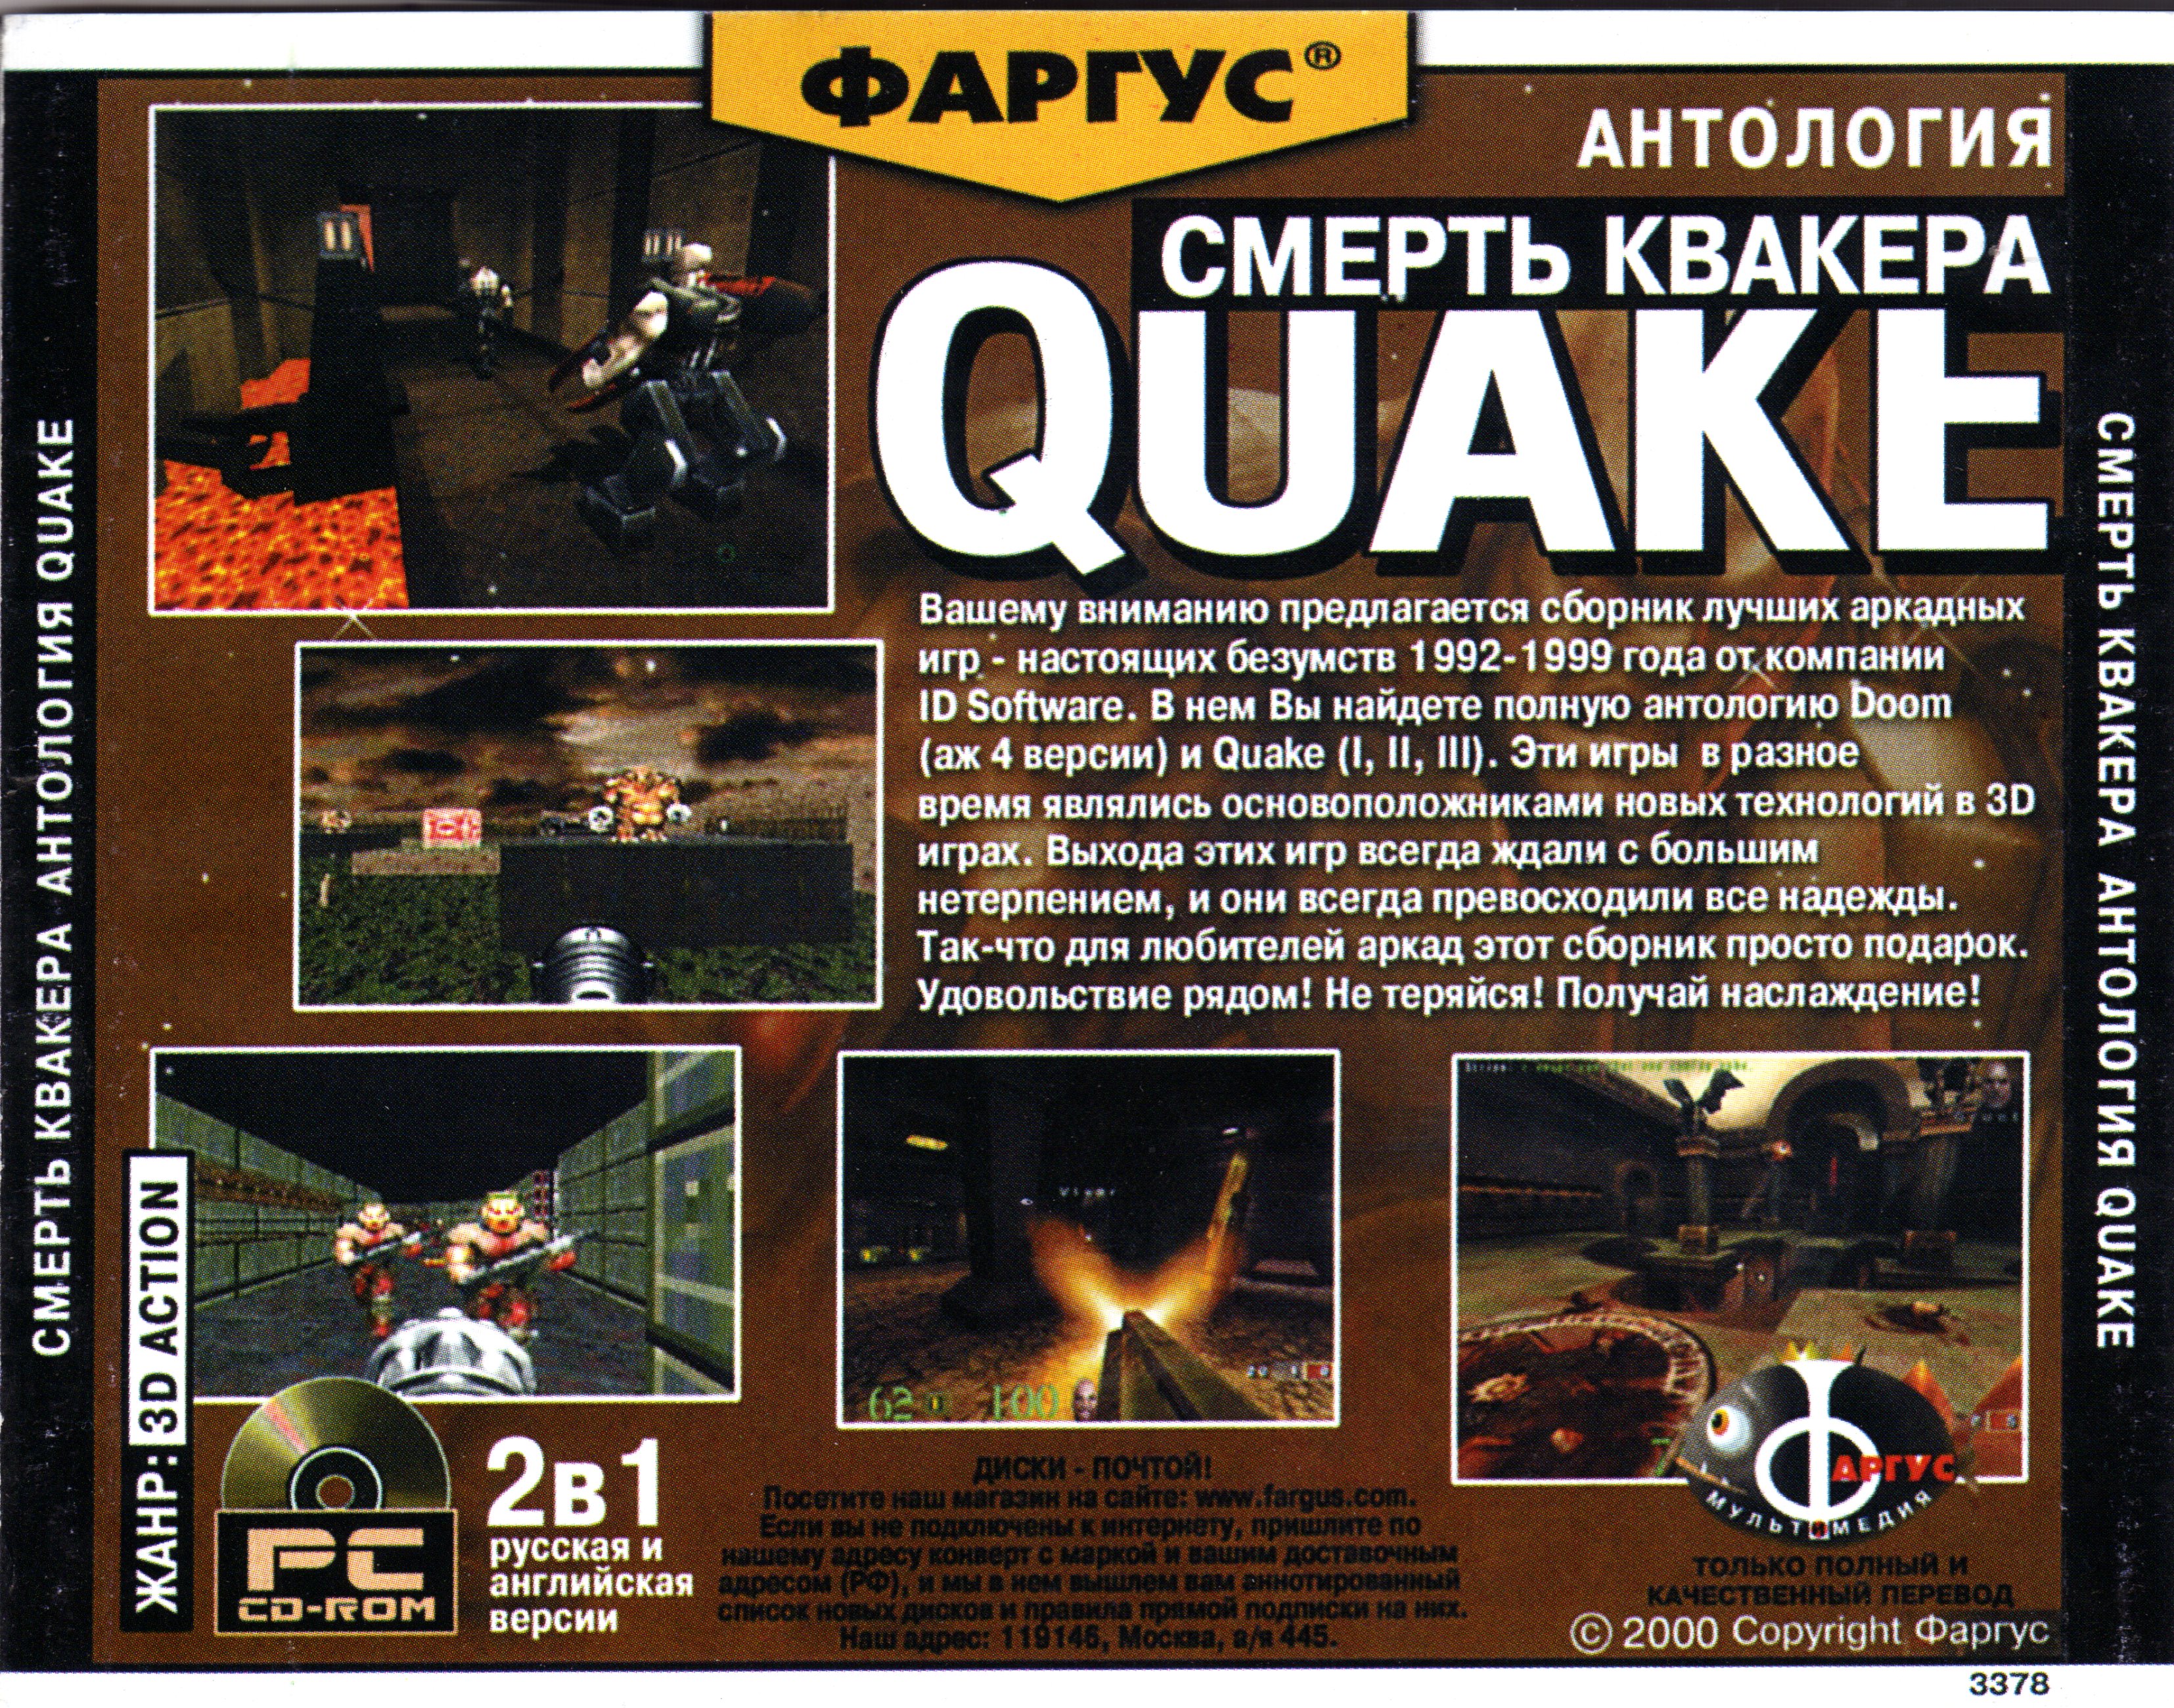 Антология перевод. Quake 1 Фаргус диск. Обложка Doom Фаргус. SIMS 1 Фаргус диск. Doom 1 обложка Фаргус.